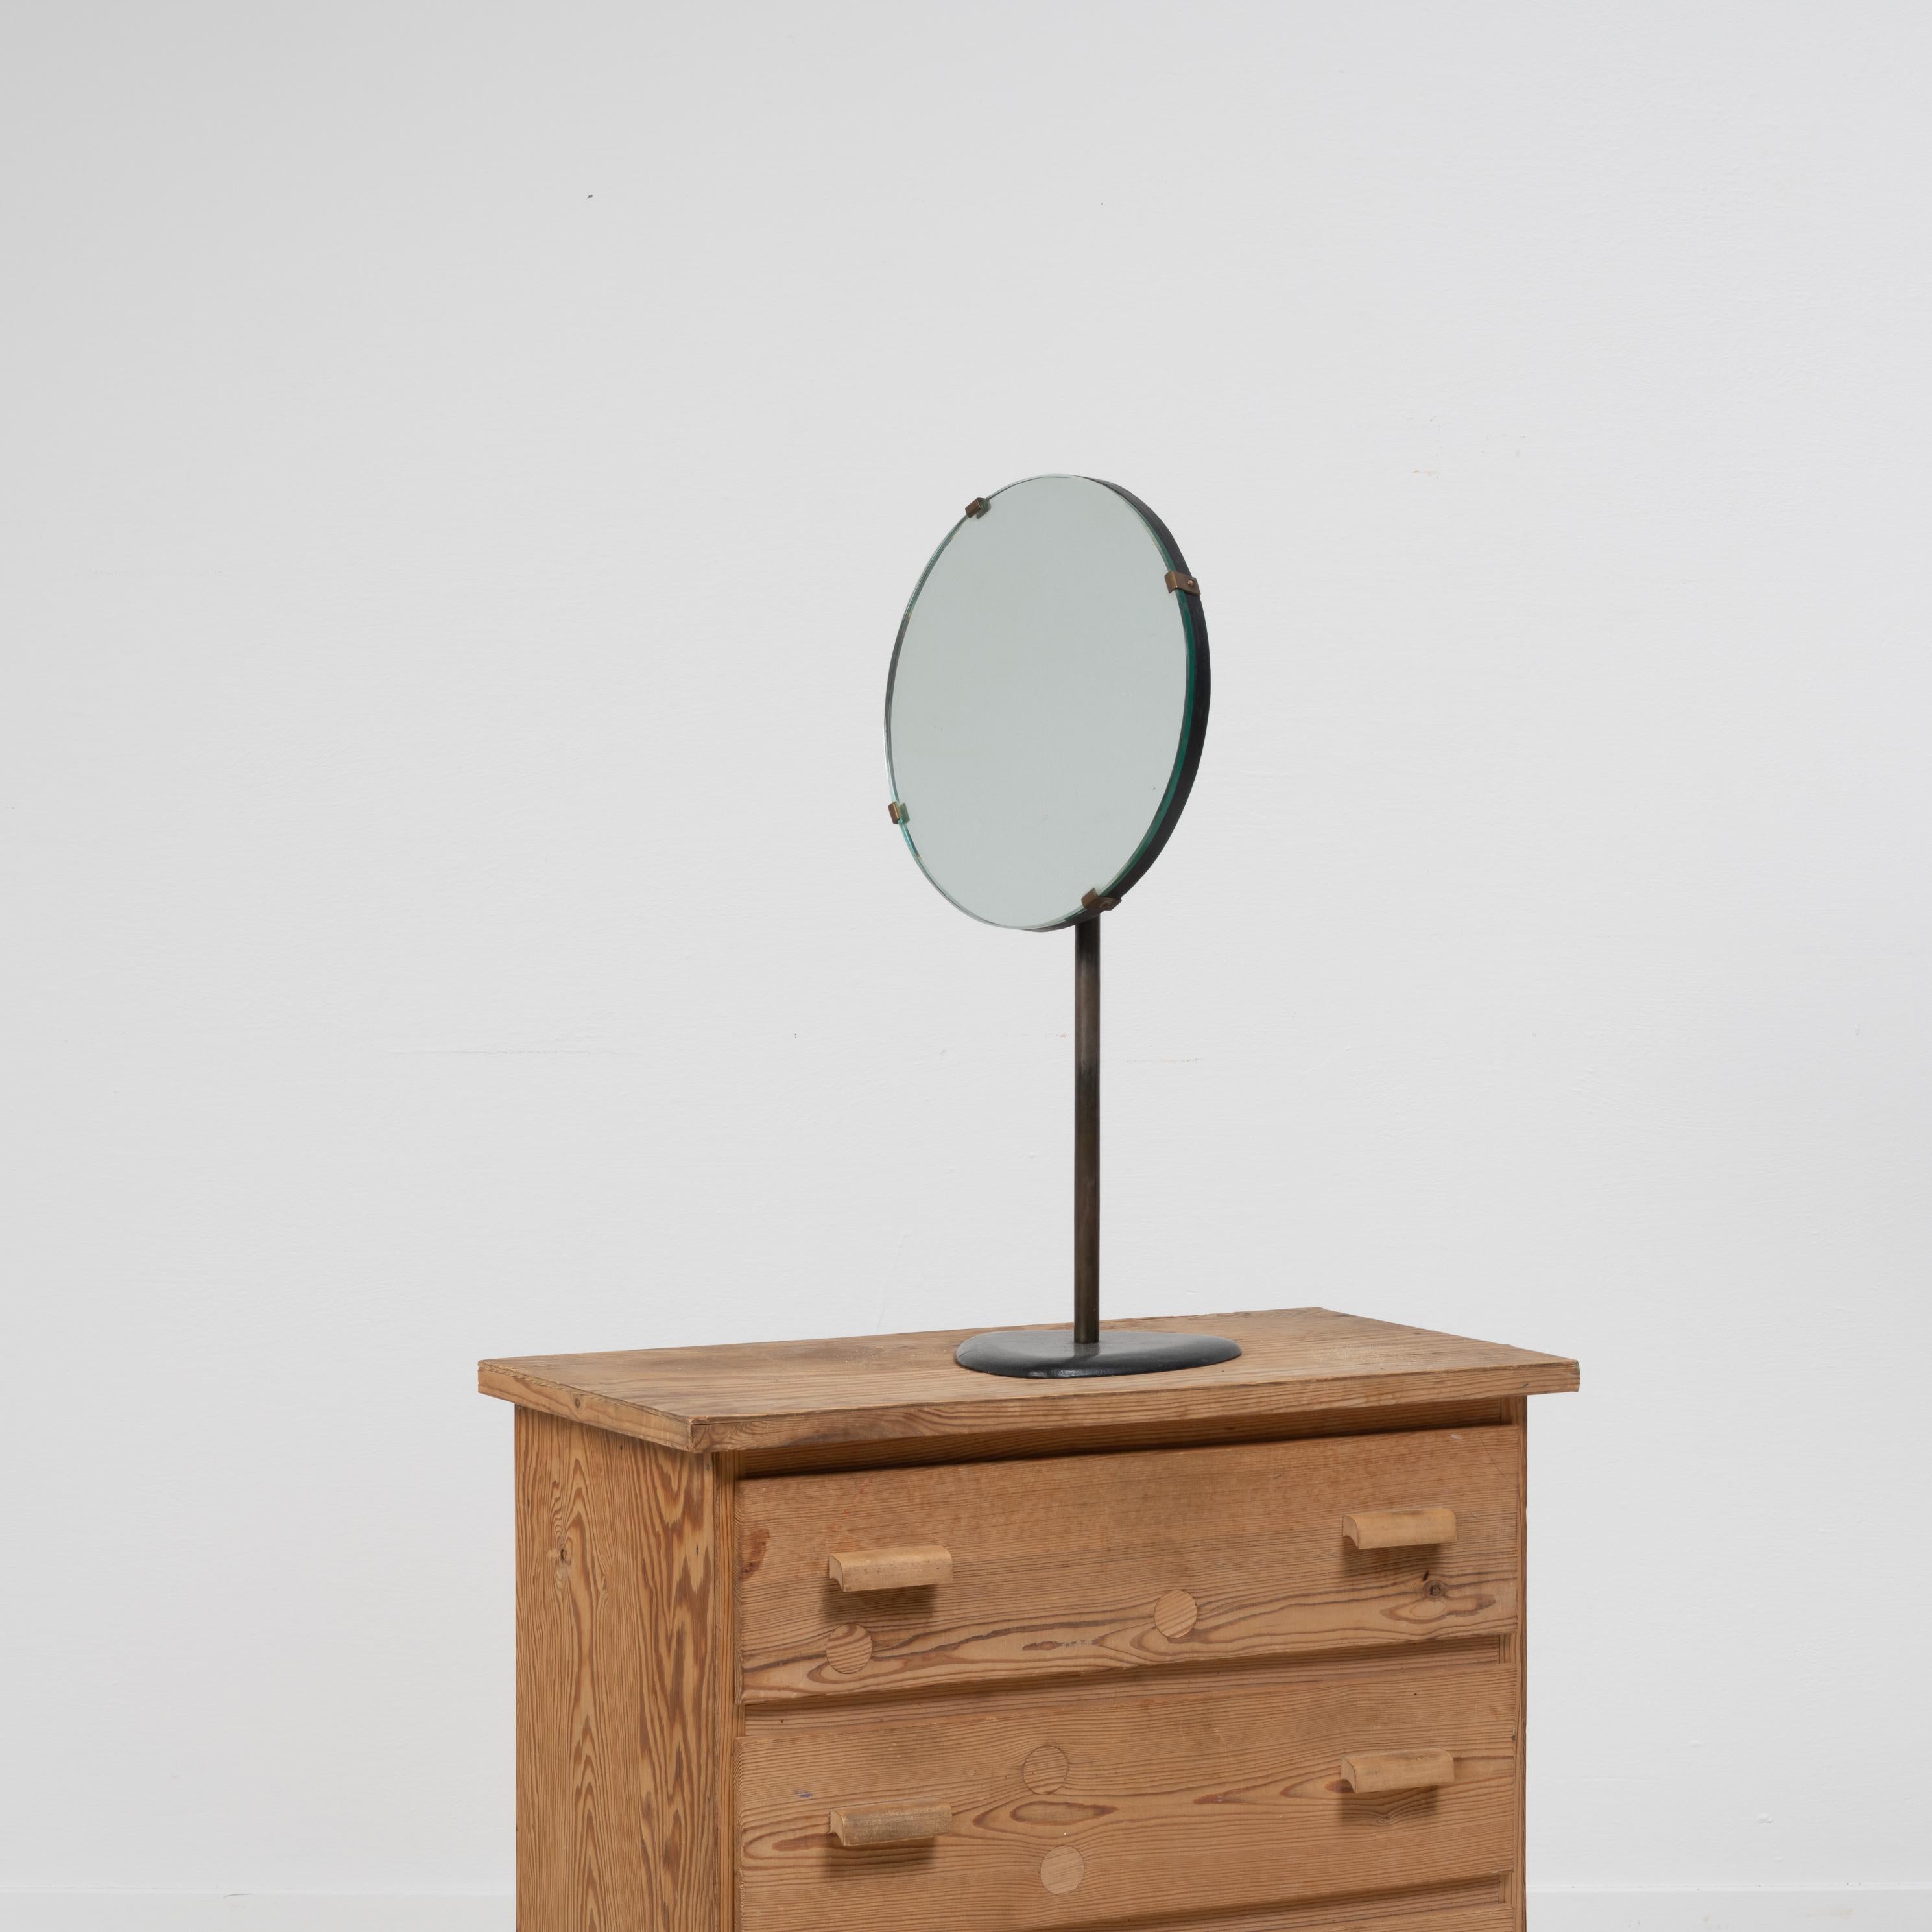 Miroir de table Art déco suédois des années 1930. Le miroir est simple et épuré, avec un design classique et intemporel qui s'adapte à tous les styles. Le miroir est de petite taille et convient parfaitement à un couloir ou à une table de toilette,